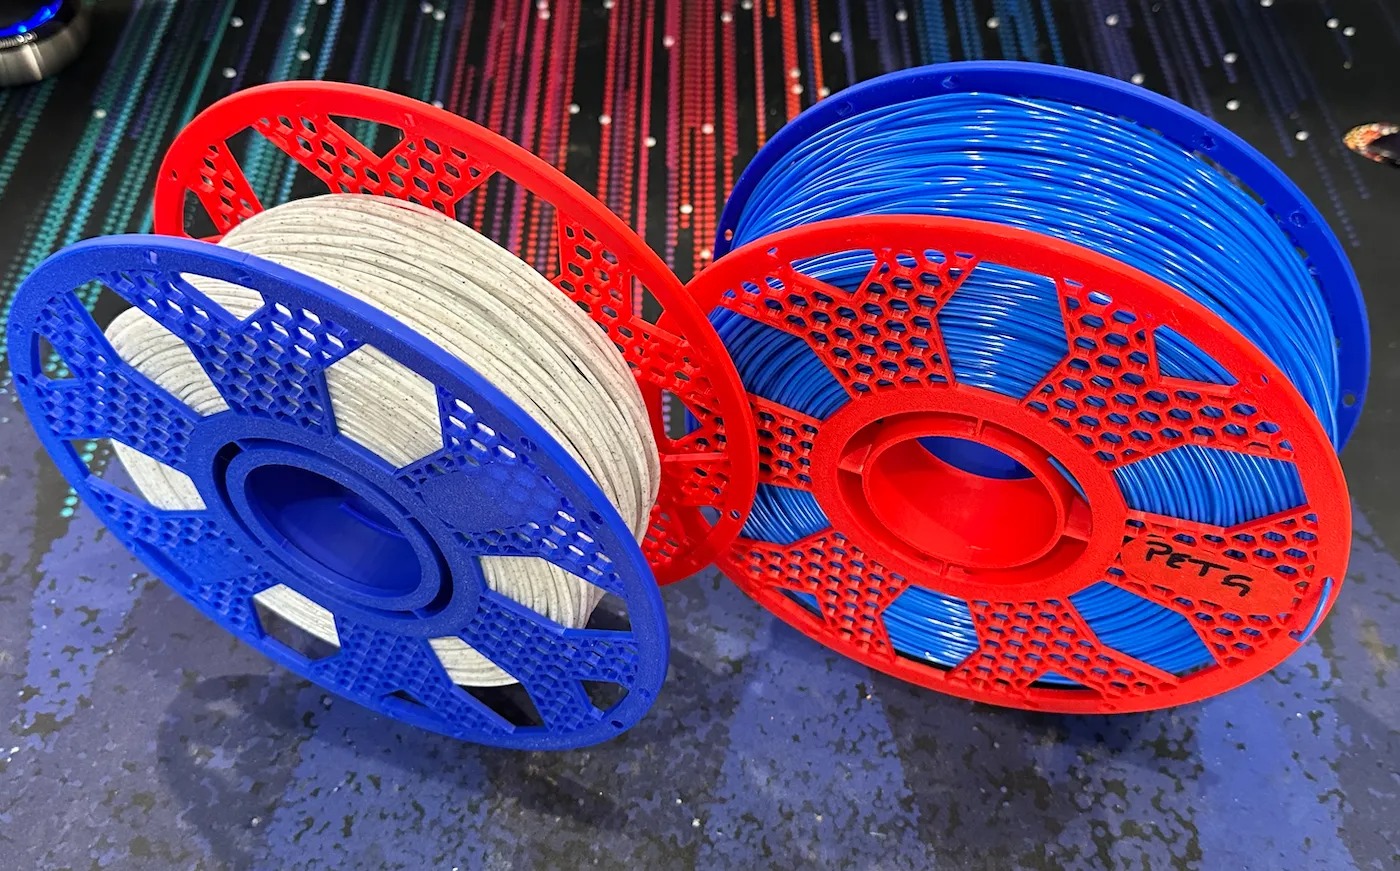 Filament Spools - 10 Spool Pack - Plastic or Metal